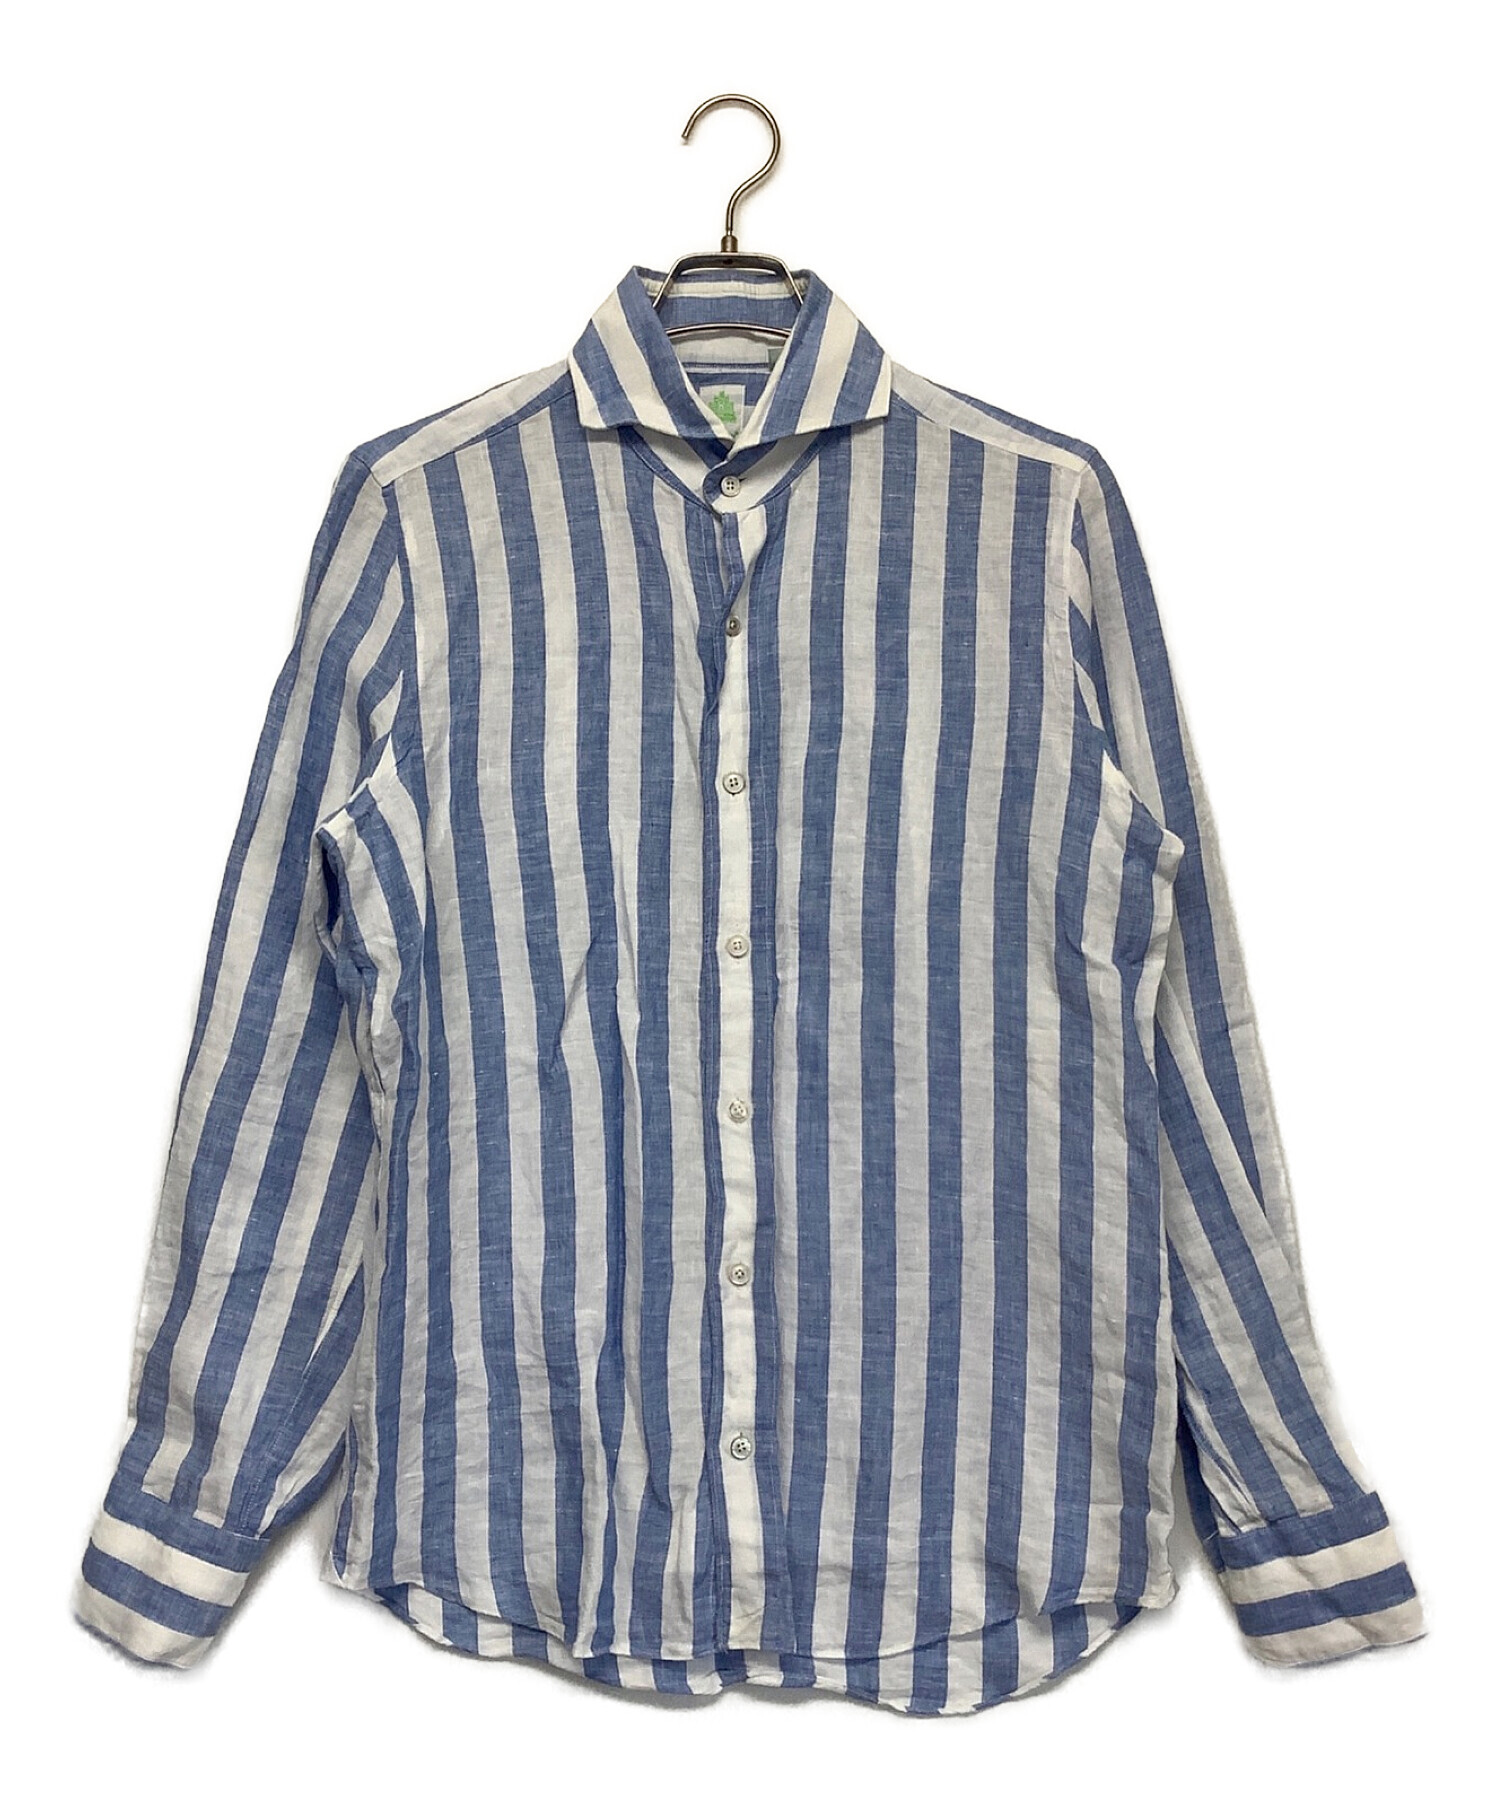 finamore (フィナモレ) リネンシャツ ブルー×ホワイト サイズ:M